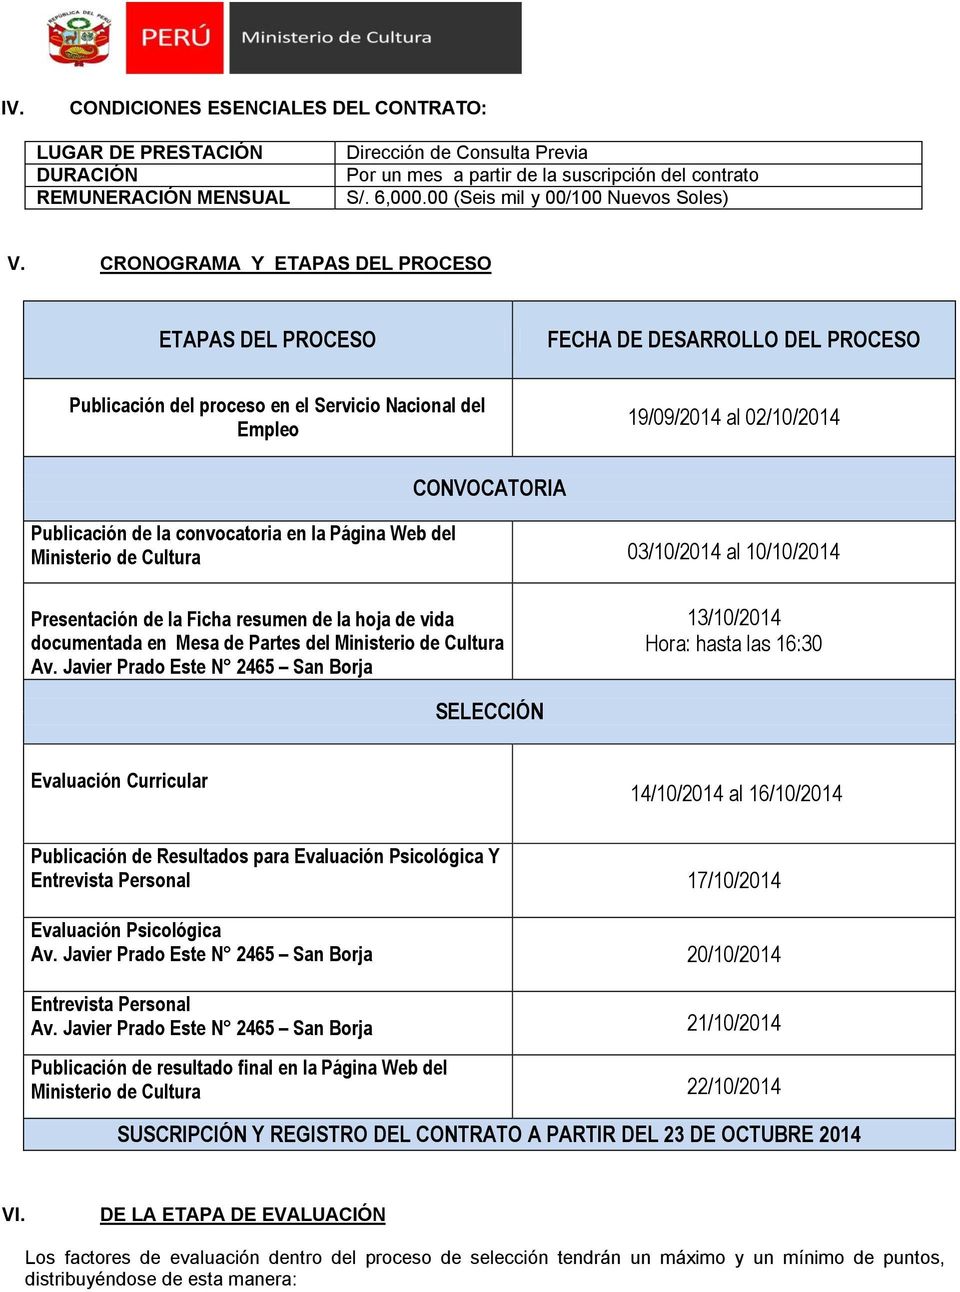 CRONOGRAMA Y ETAPAS DEL PROCESO ETAPAS DEL PROCESO FECHA DE DESARROLLO DEL PROCESO Publicación del proceso en el Servicio Nacional del Empleo 19/09/2014 al 02/10/2014 CONVOCATORIA Publicación de la